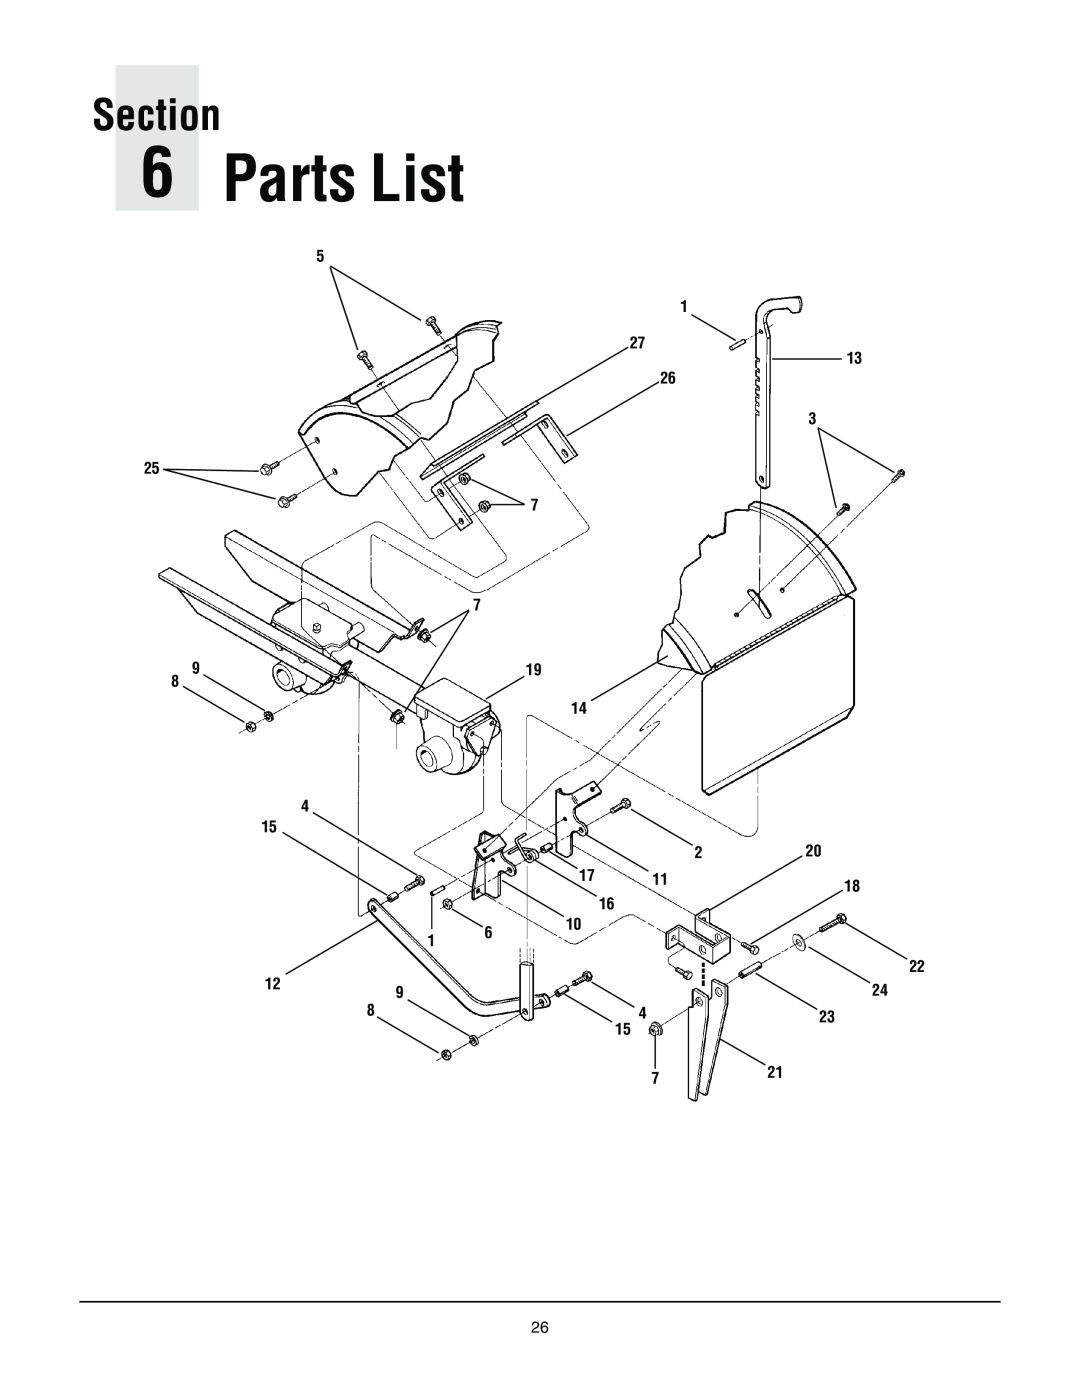 Troy-Bilt 645A-Bronco manual Parts List, Section 